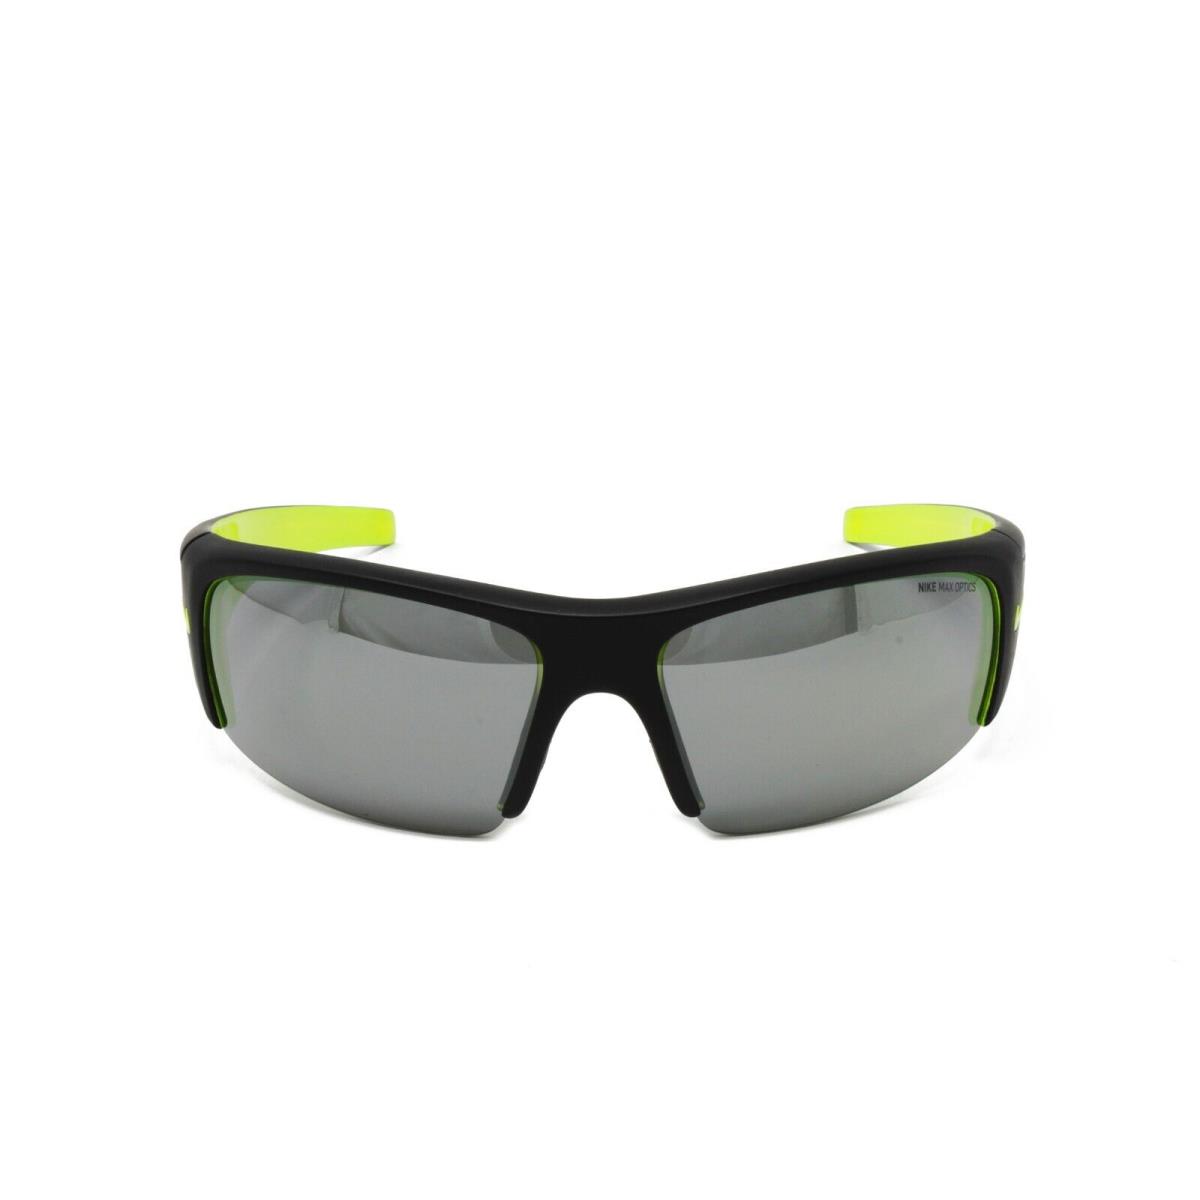 Nike Sunglasses Diverge EV0325 007 Black Volt 64mm Grey Silver Flash Lens - Frame: Black, Lens: Gray